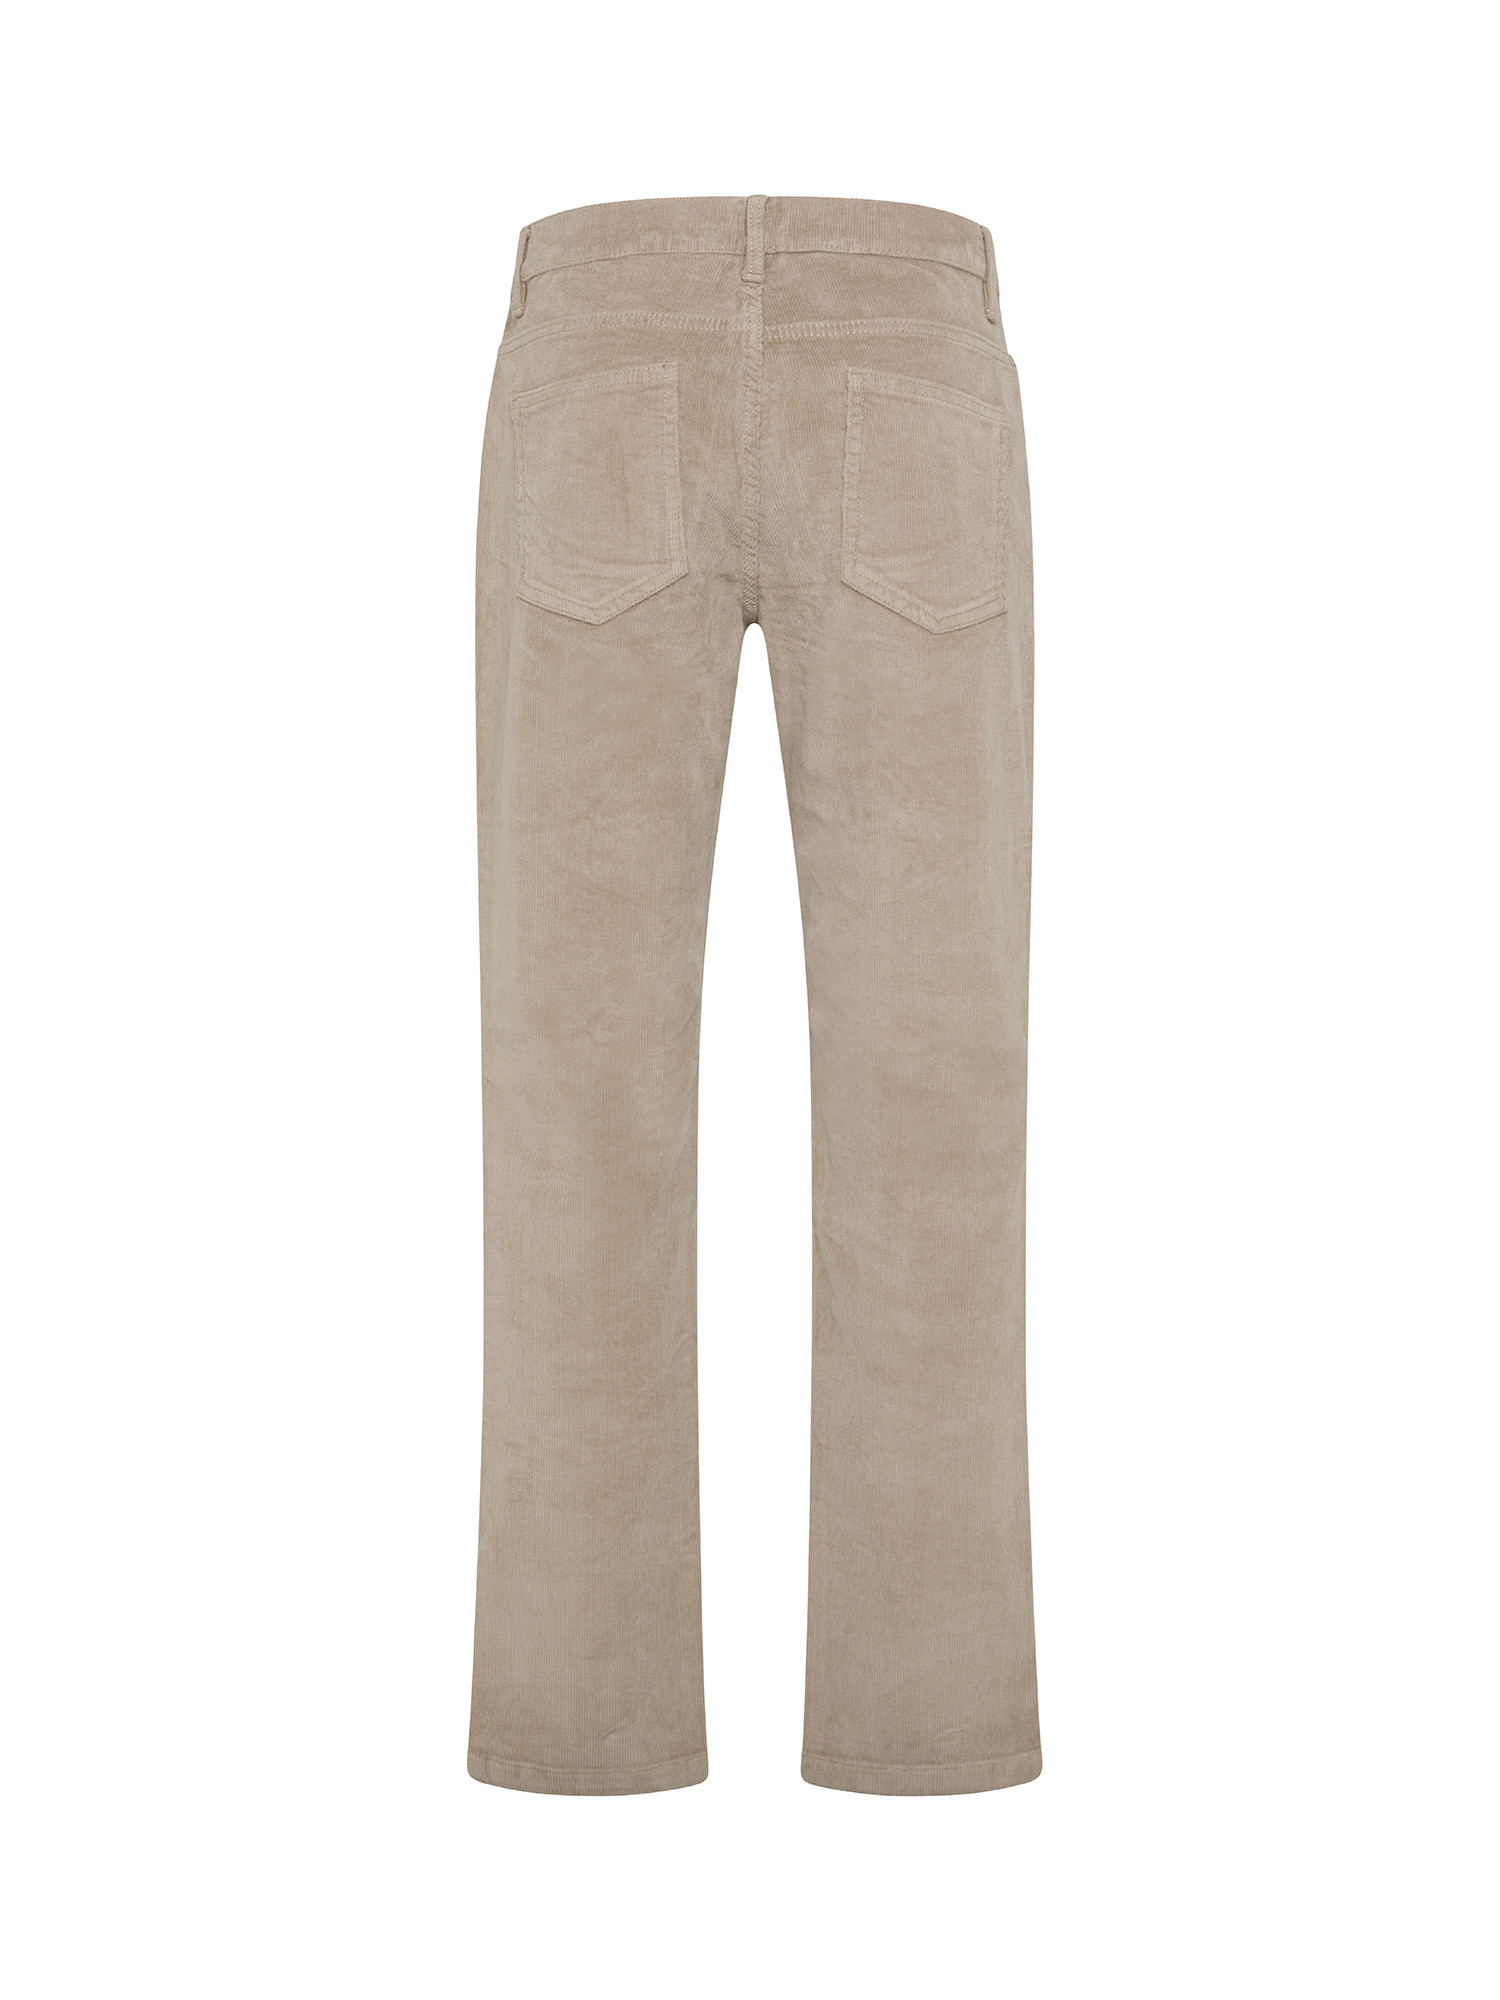 JCT - Pantaloni cinque tasche slim fit in velluto, Grigio tortora, large image number 1